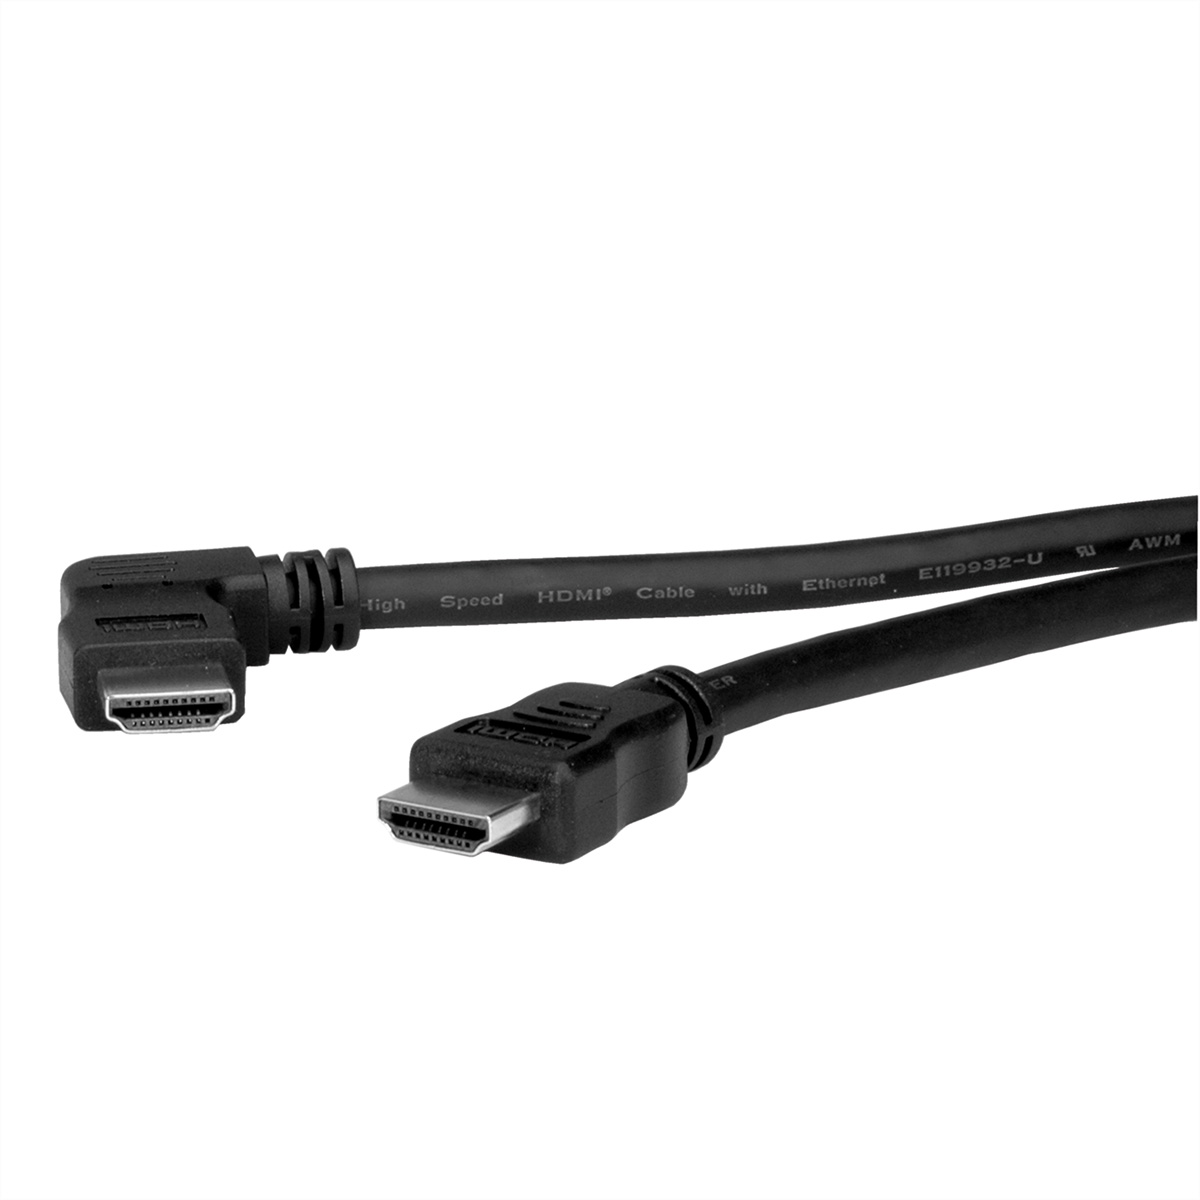 ROLINE HDMI High Speed Kabel mit Ethernet, linksgewinkelt, 2 m